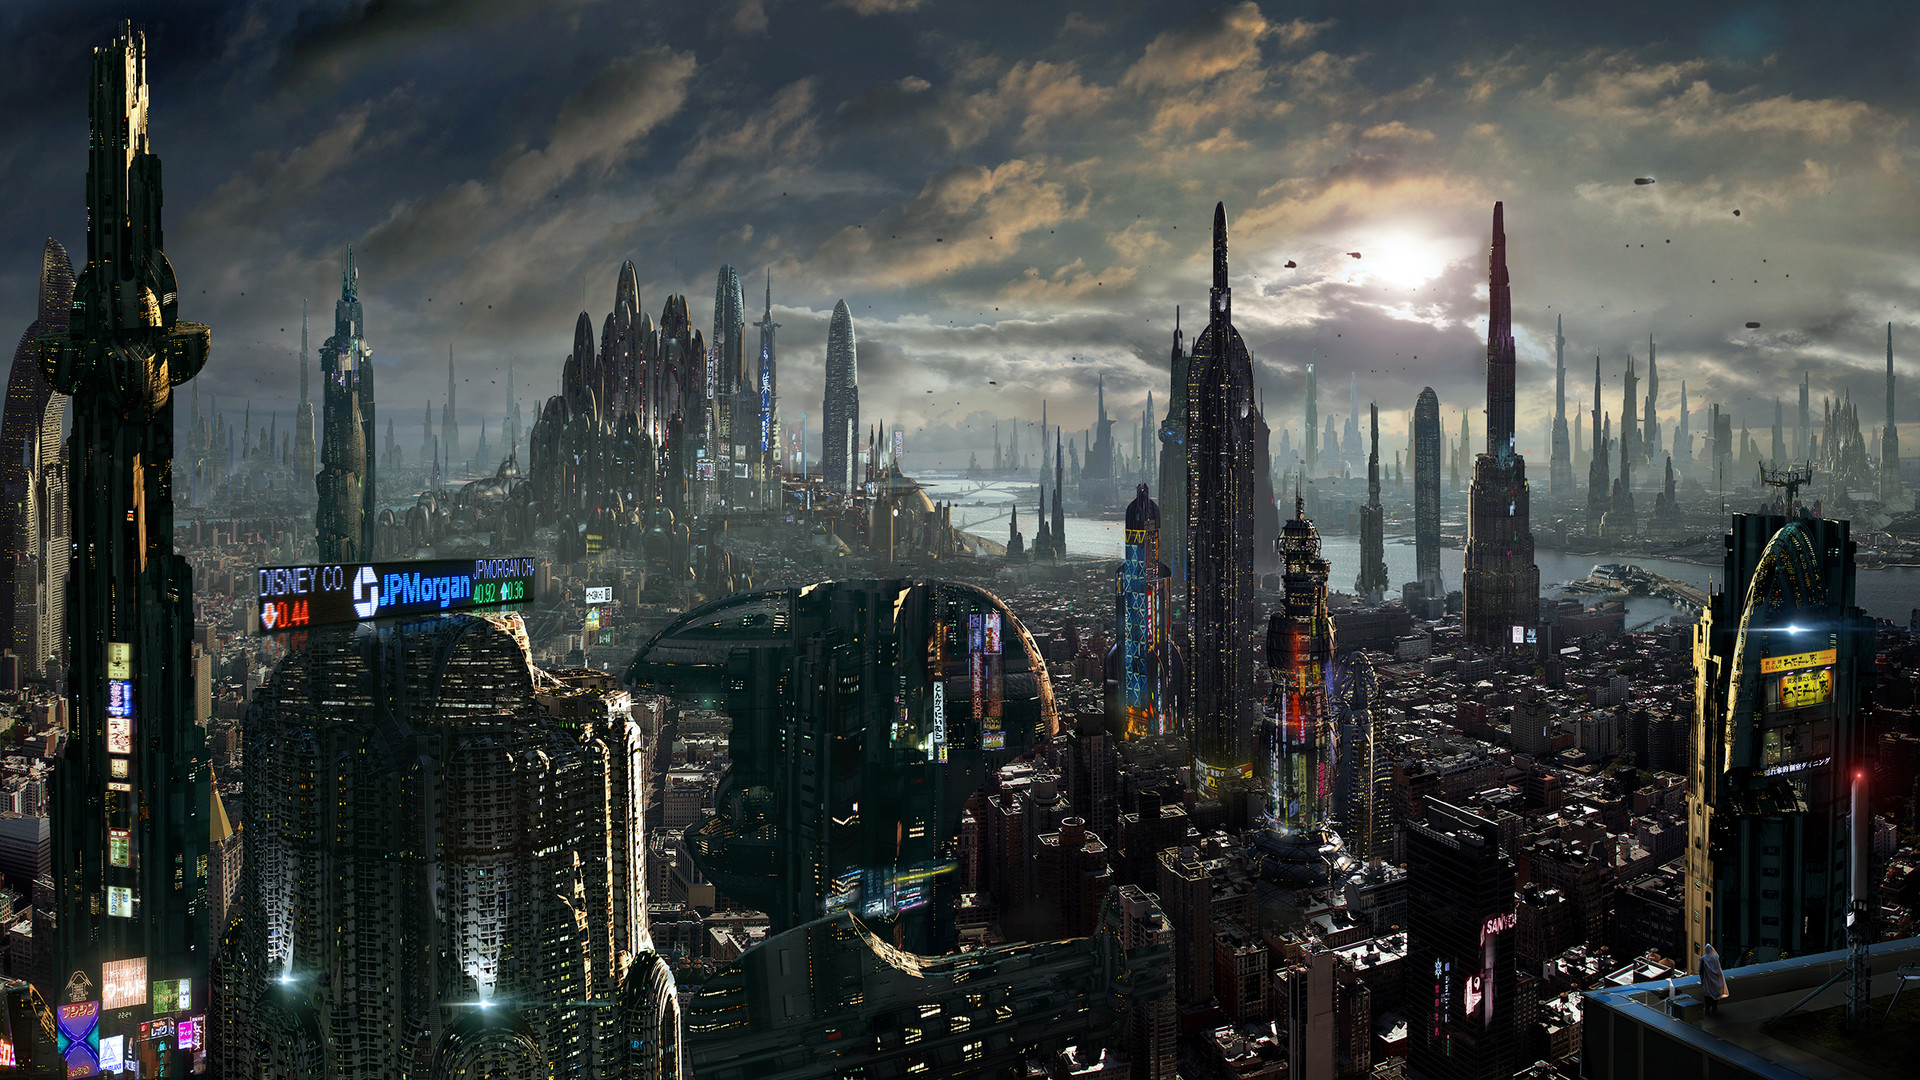 scott-richard-future-city-amazing-facts-final-by-scott-richard-small-version.jpg